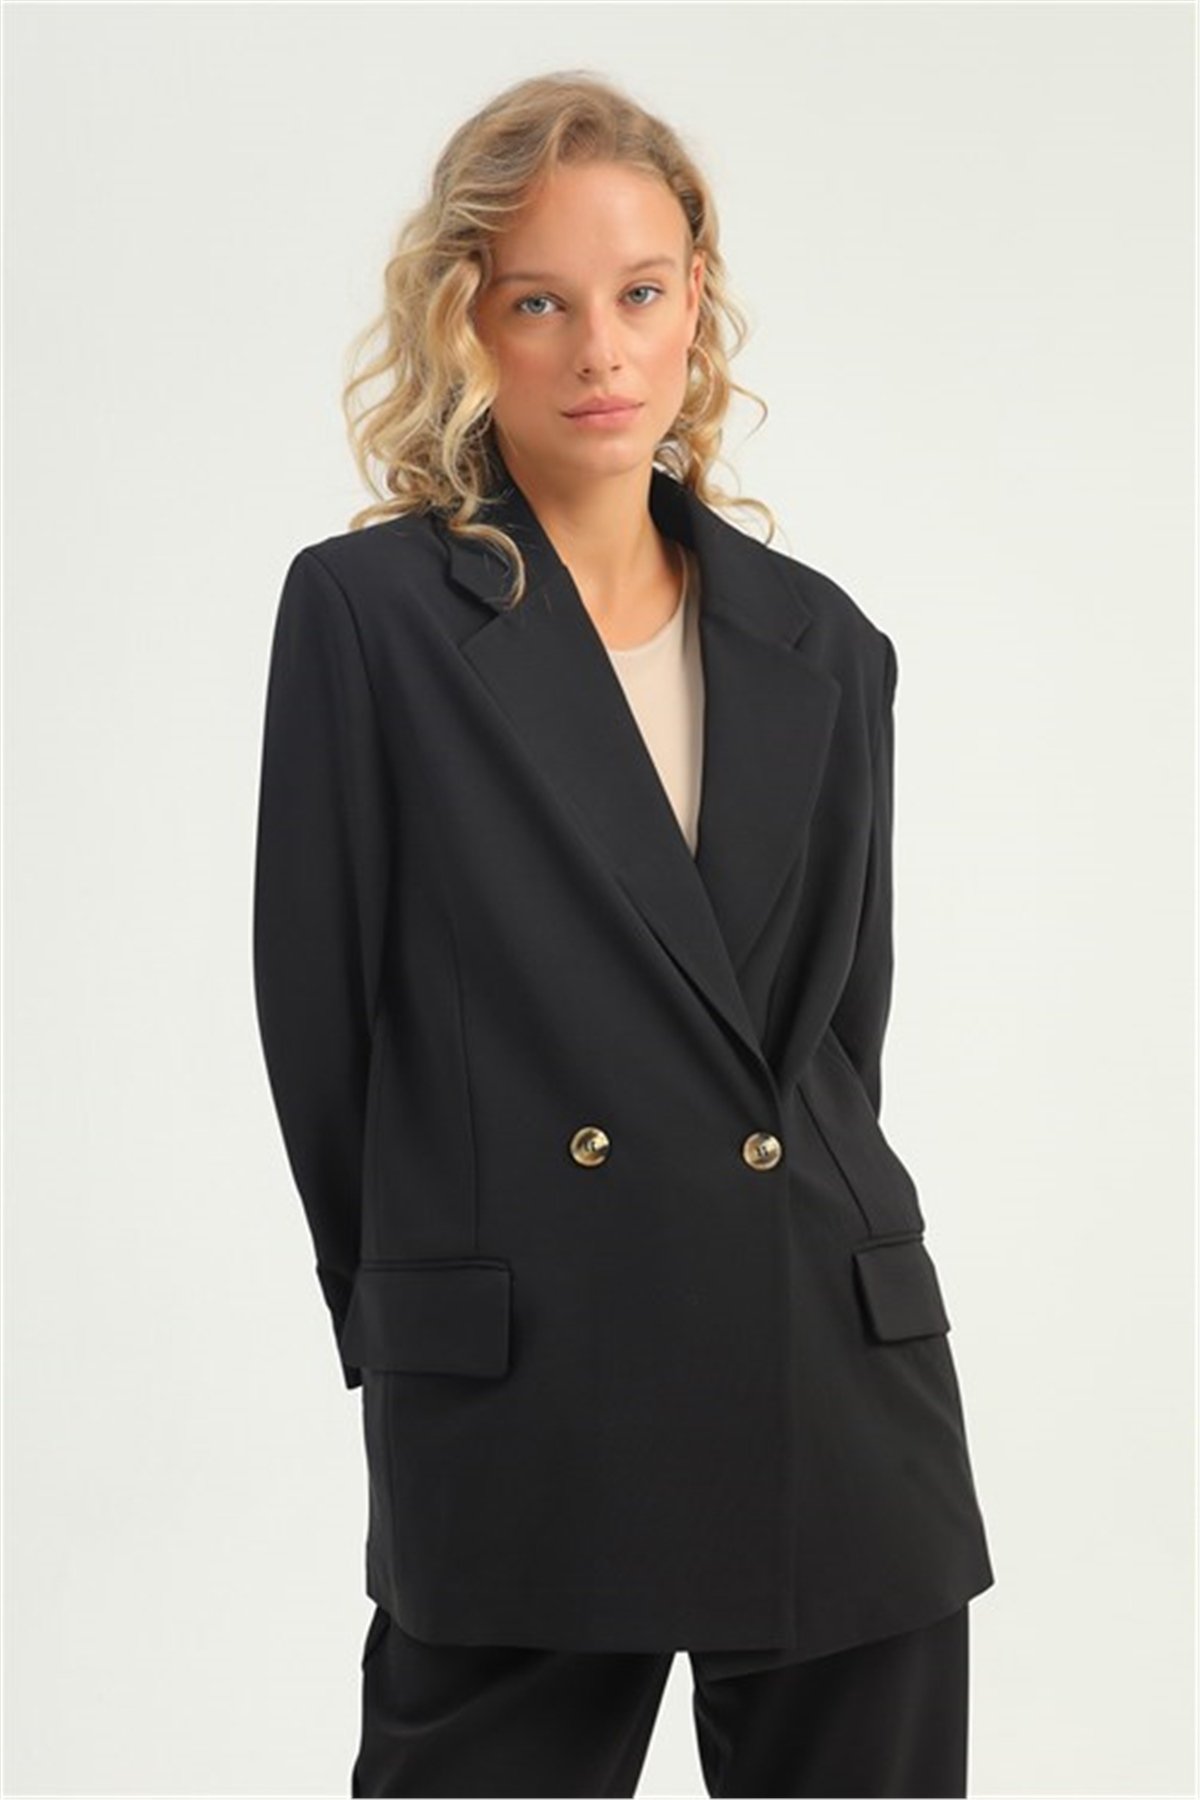 Kadın Blazer Ceket Siyah | marisammoda.com